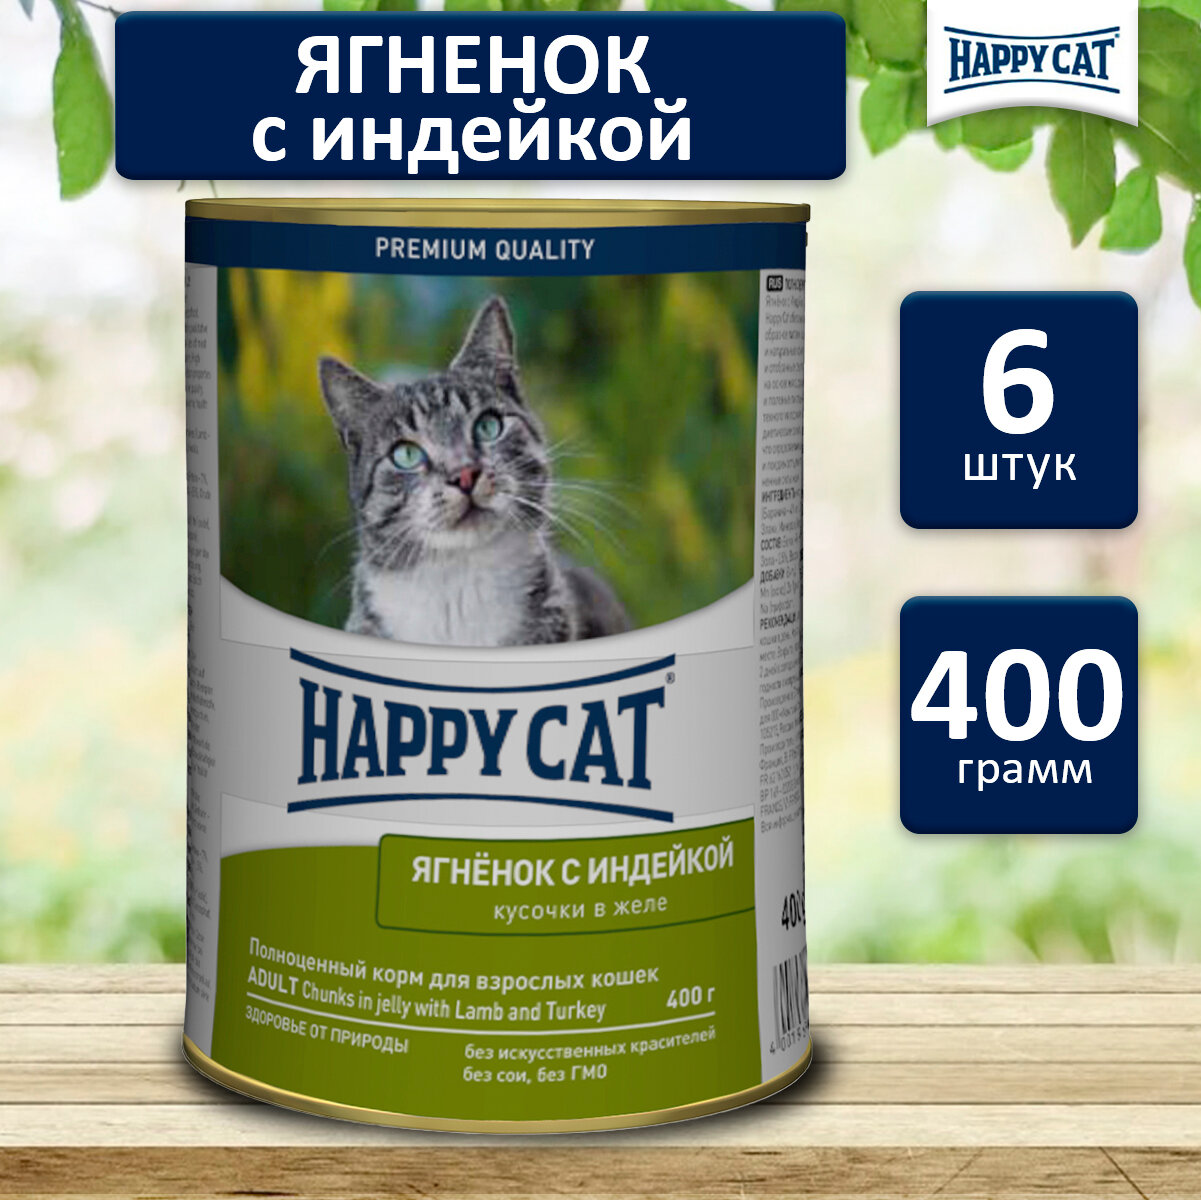 Консервы для кошек Happy Cat Хэппи Кэт кусочки в желе. (Ягненок, индейкой), 400 гр. по 6 шт. (ГЛ)